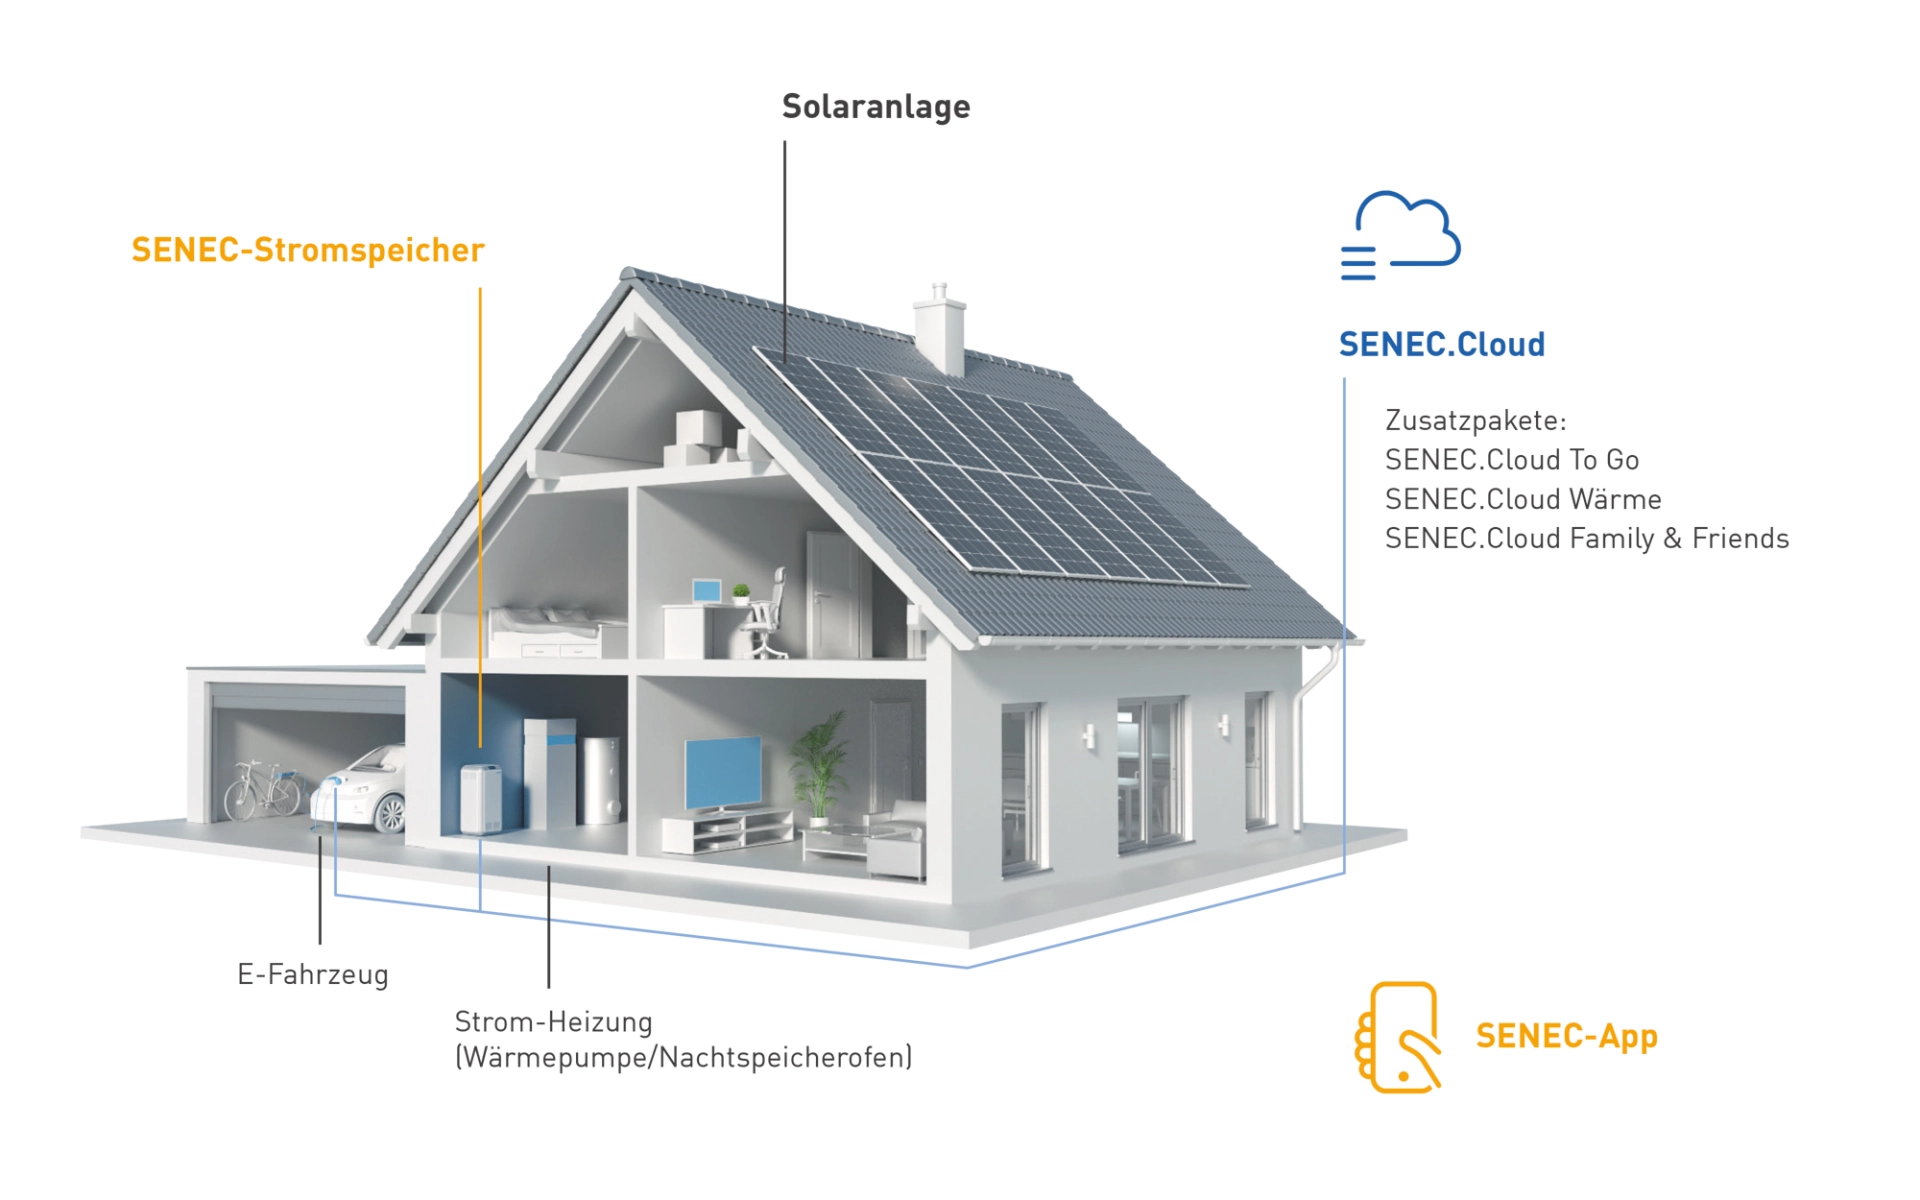 Grafik von einem Haus mit Solaranlage, Stromspeicher-System, Wallbox-Ladestation für ein E-Auto und einen passende App-Steuerung.